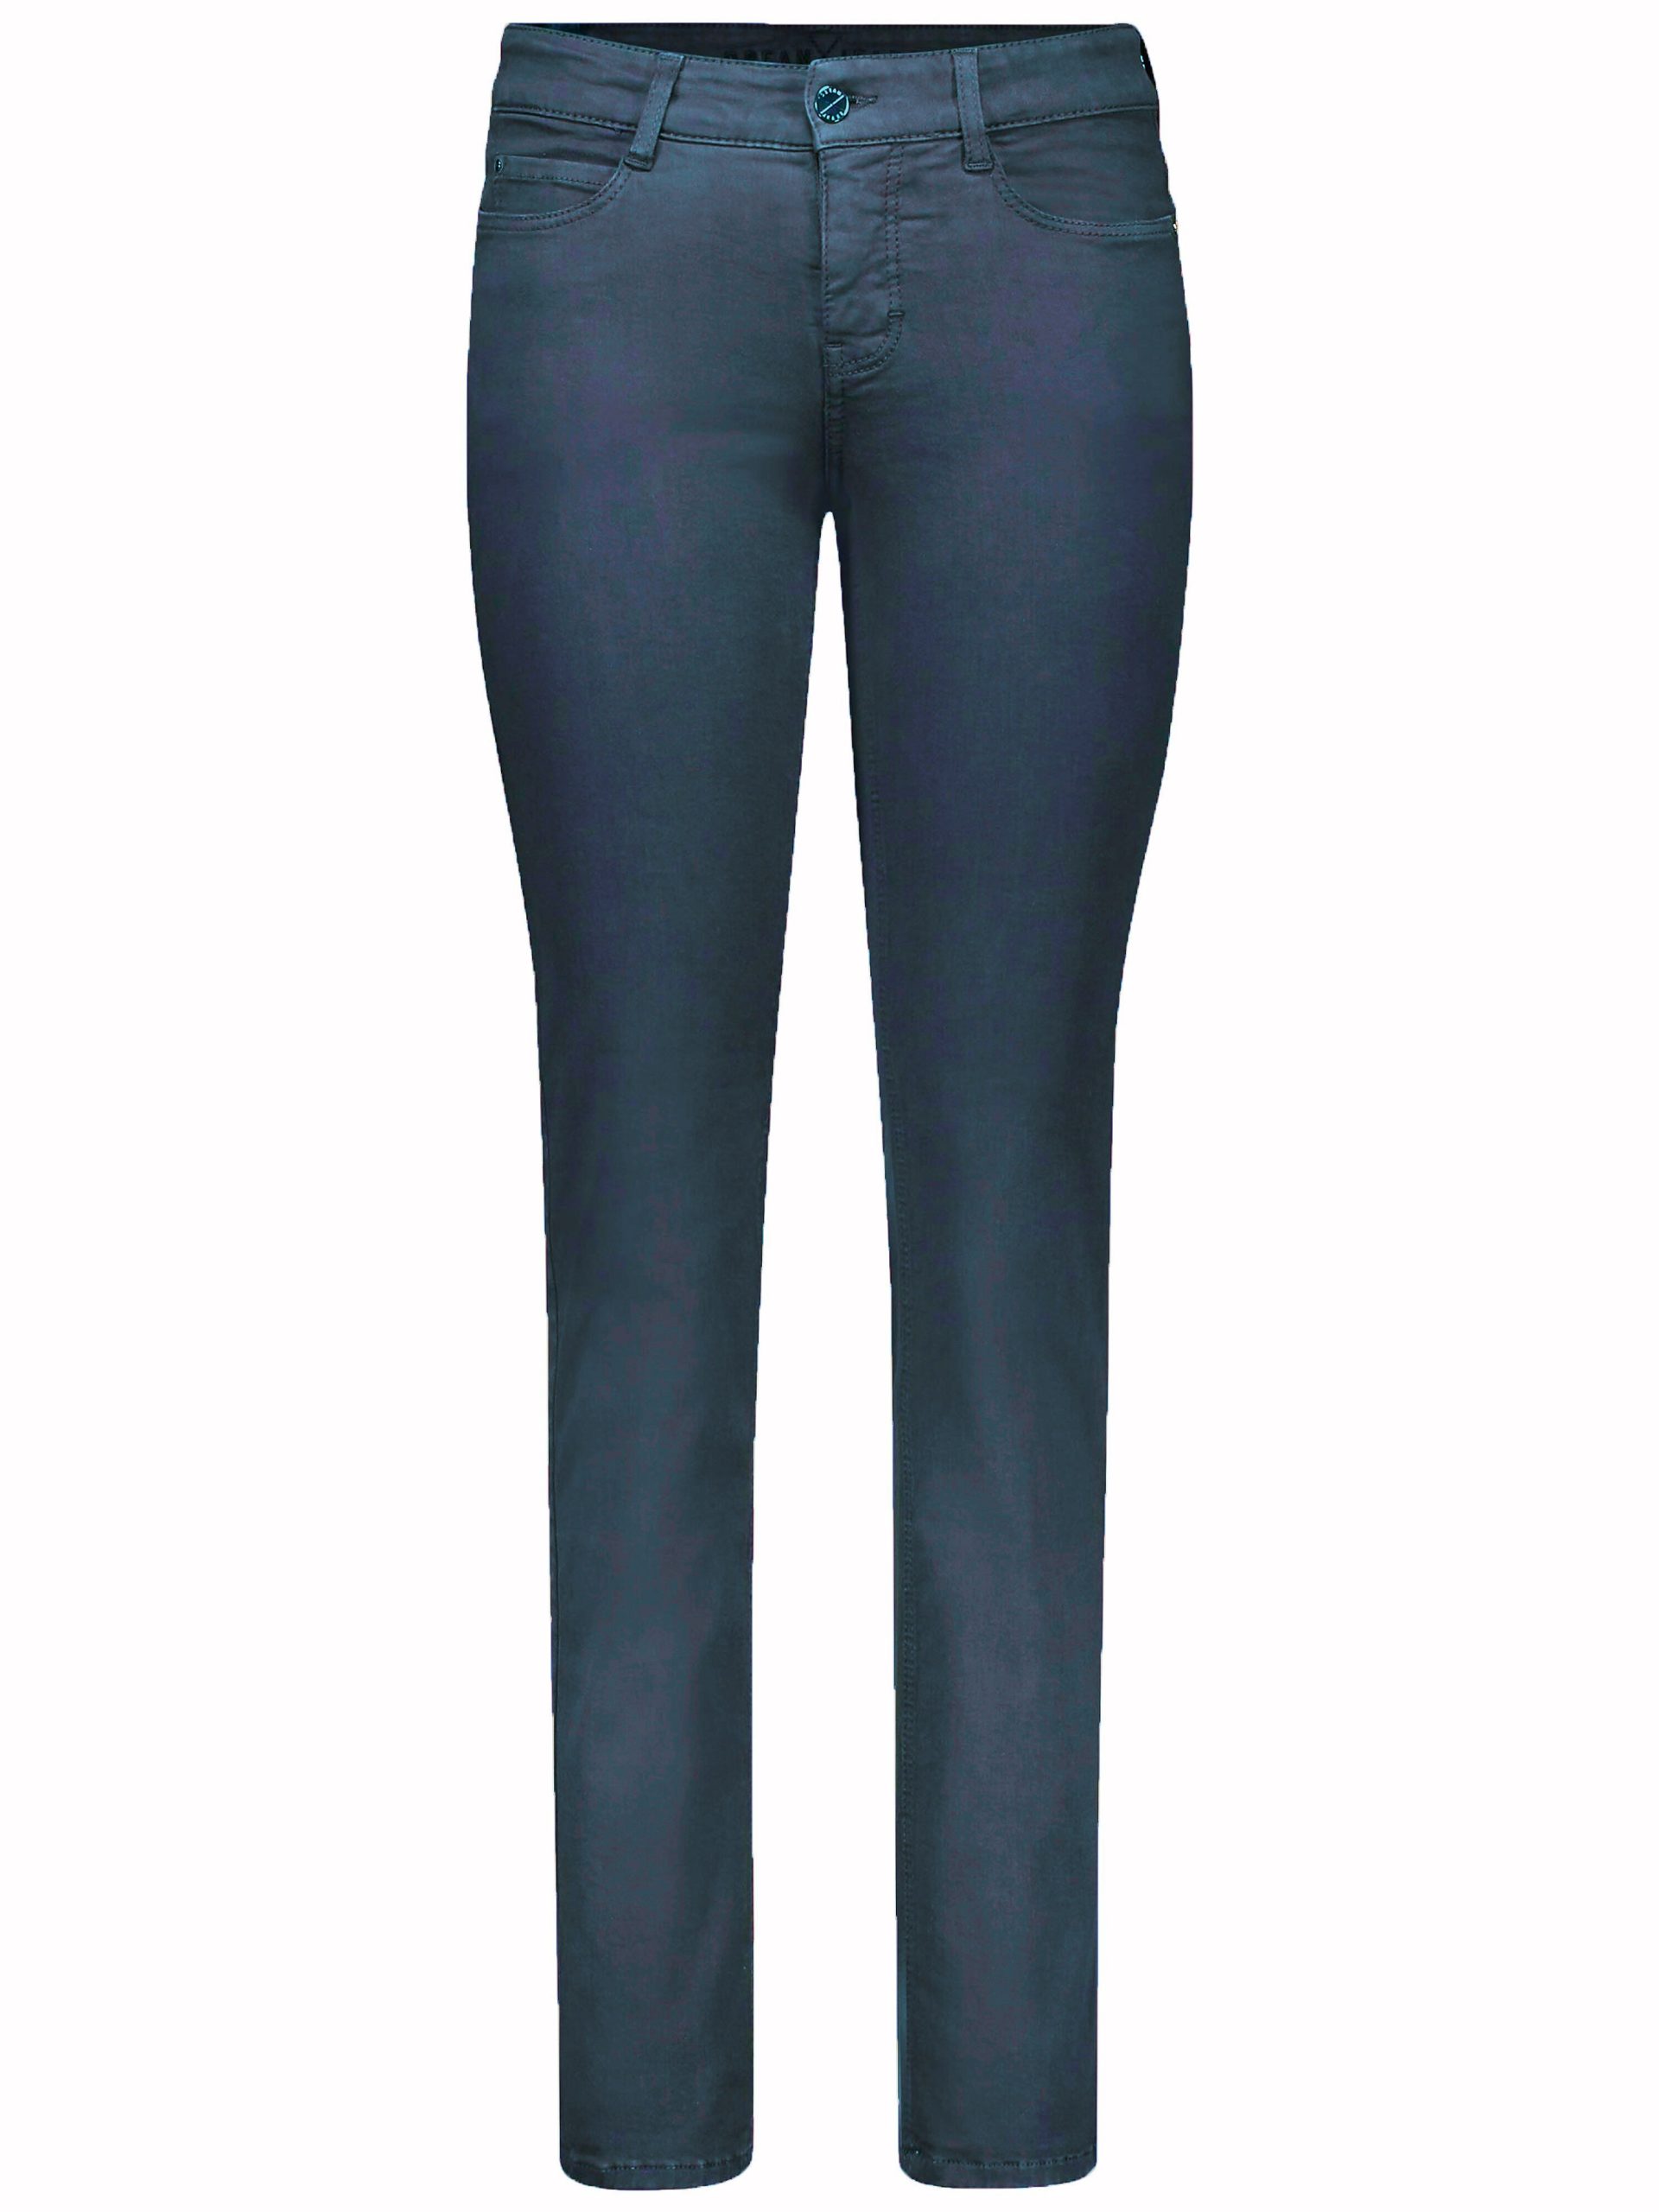 Jeans, lengte 32 inch Van Mac denim Kopen